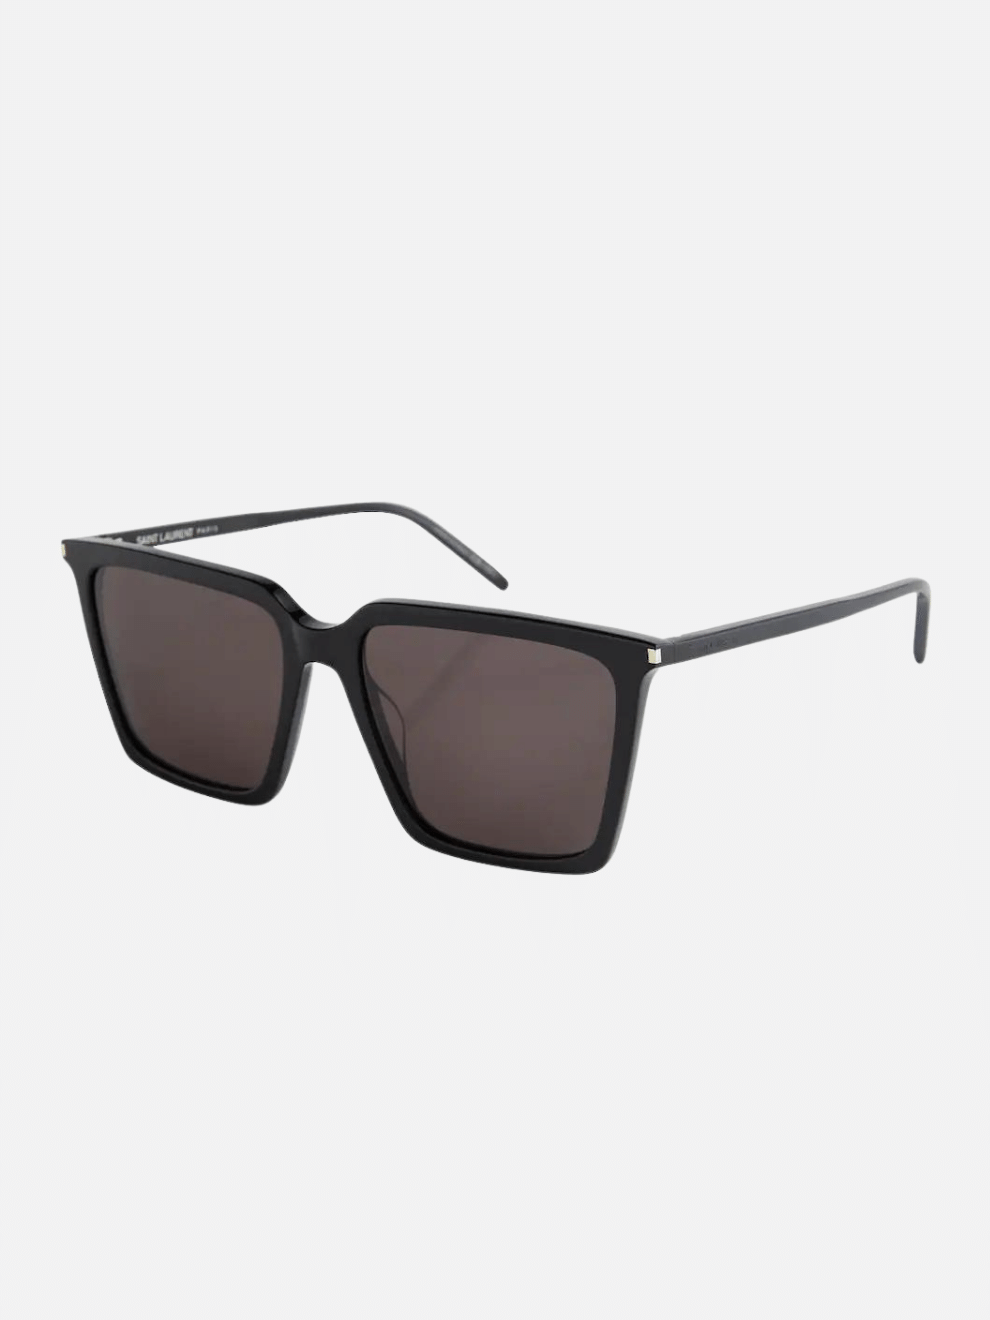 Square Minimalist Sunglasses in Black